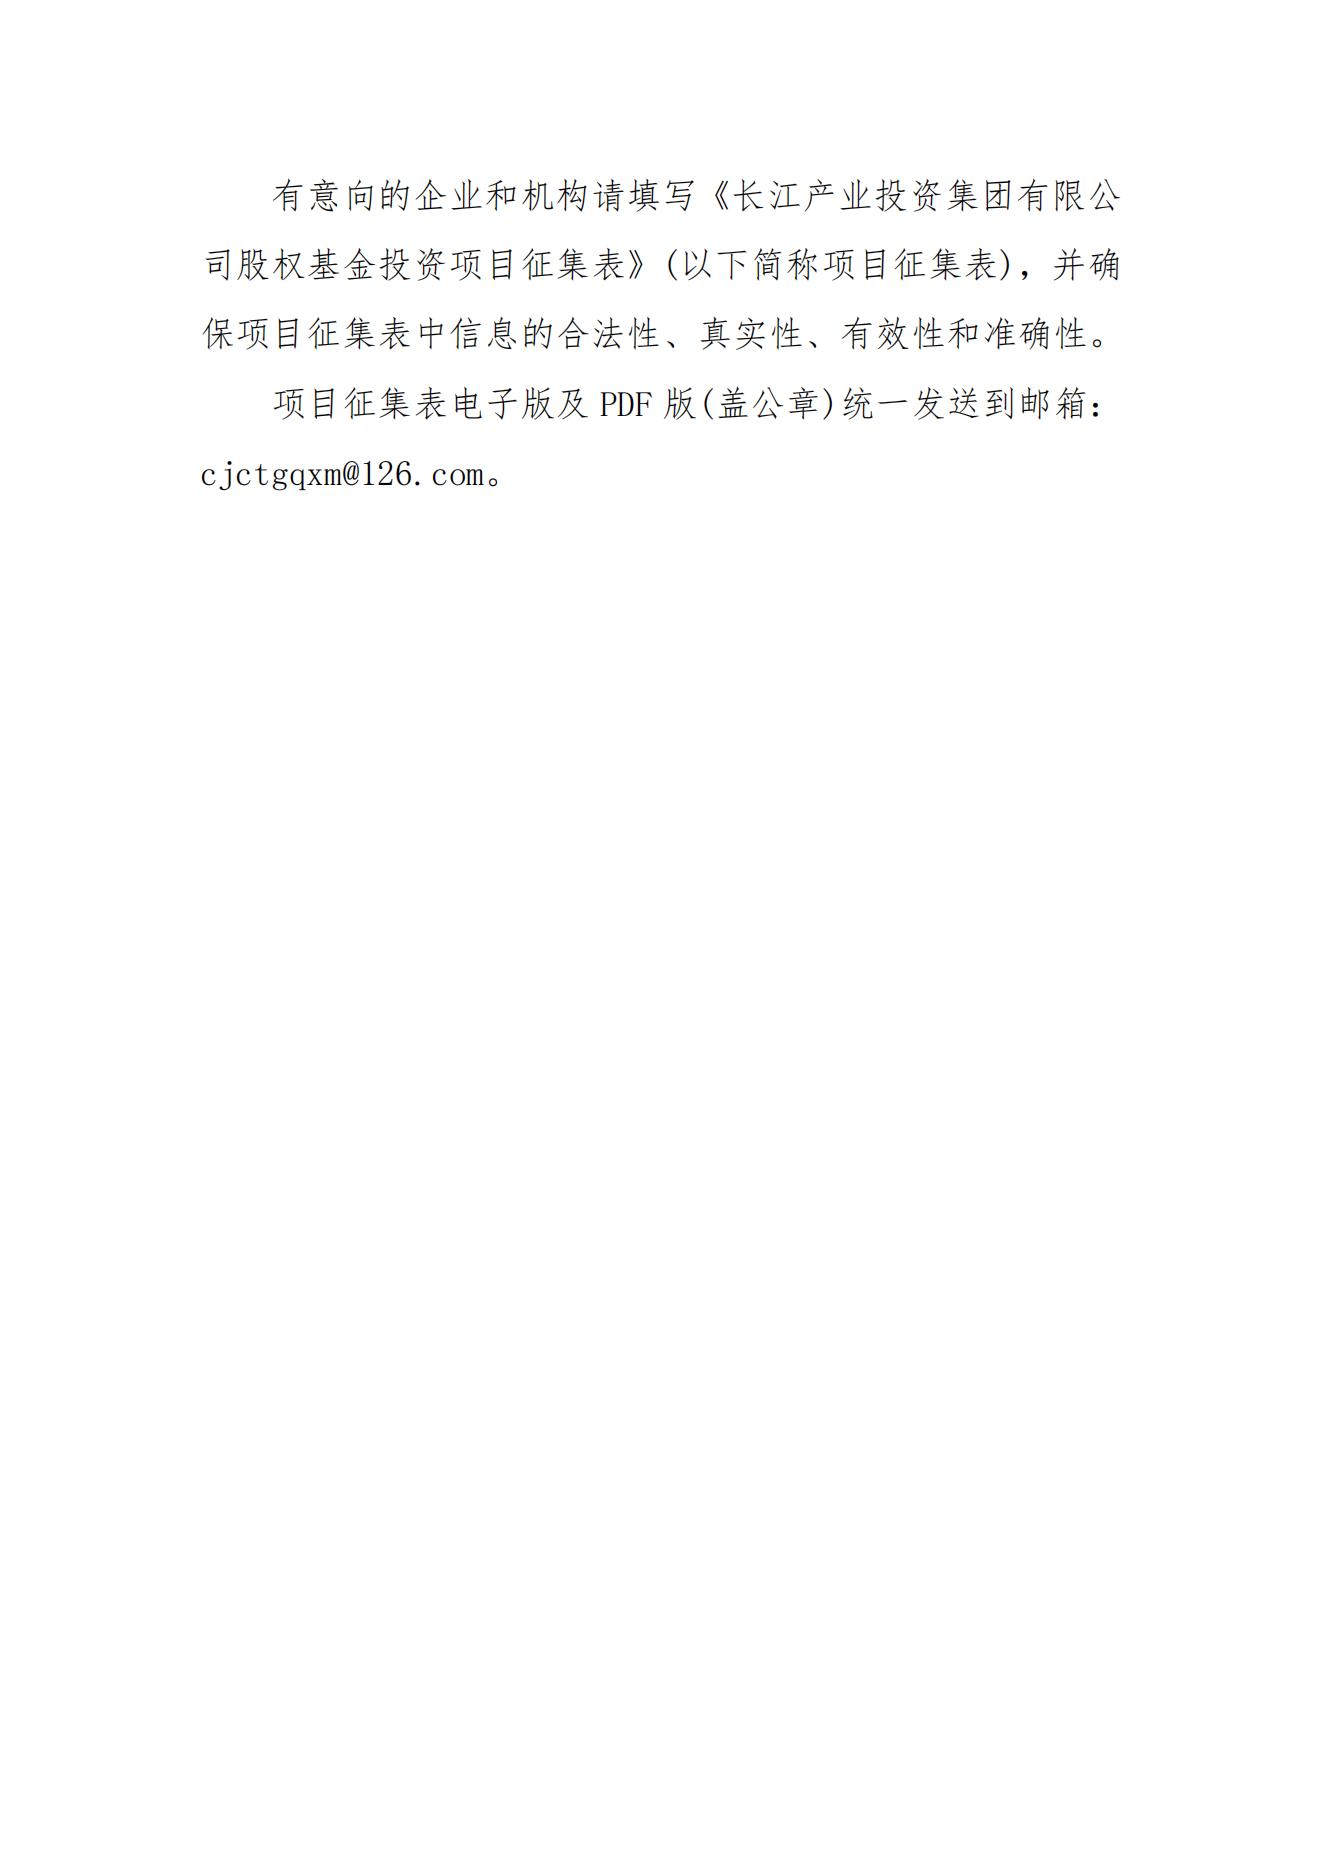 长江产业投资集团有限公司关于征集股权基金投资项目的公告_02.jpg